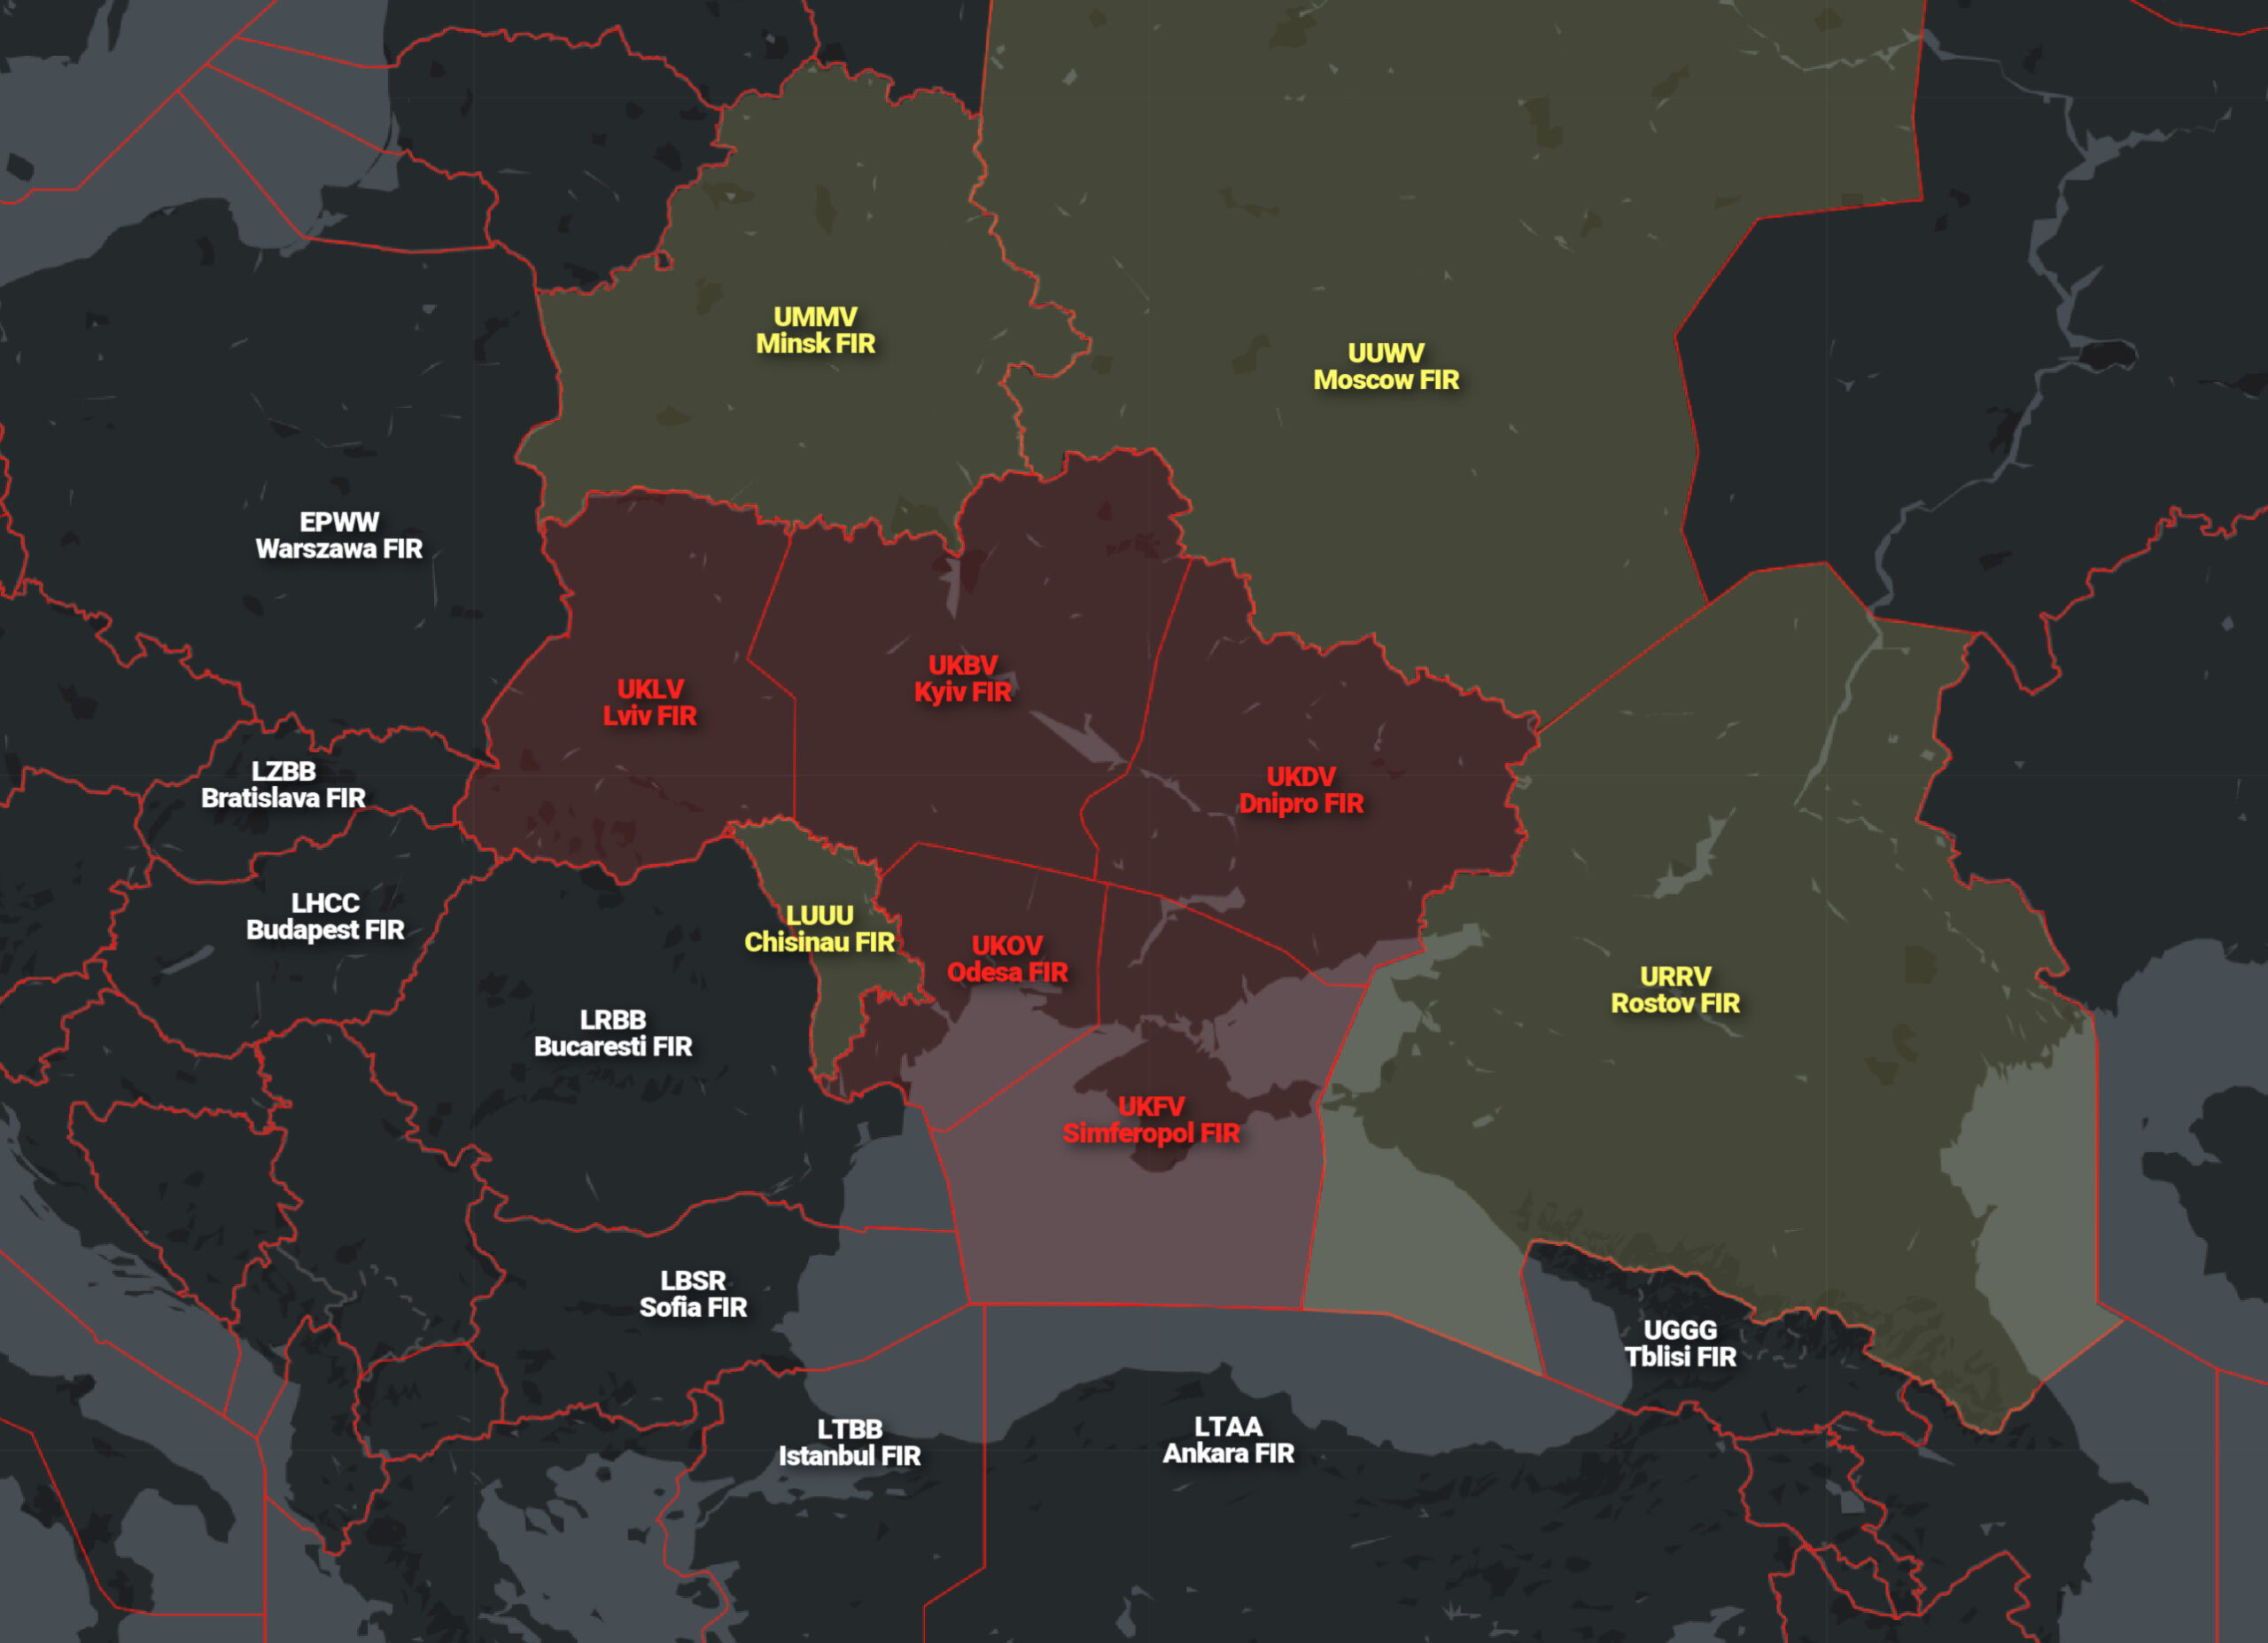 Ucrania Nivel de riesgo: Uno - No volar! - Vuelos a o desde Ucrania - Forum Russia, Baltics and Europe in the former USSR